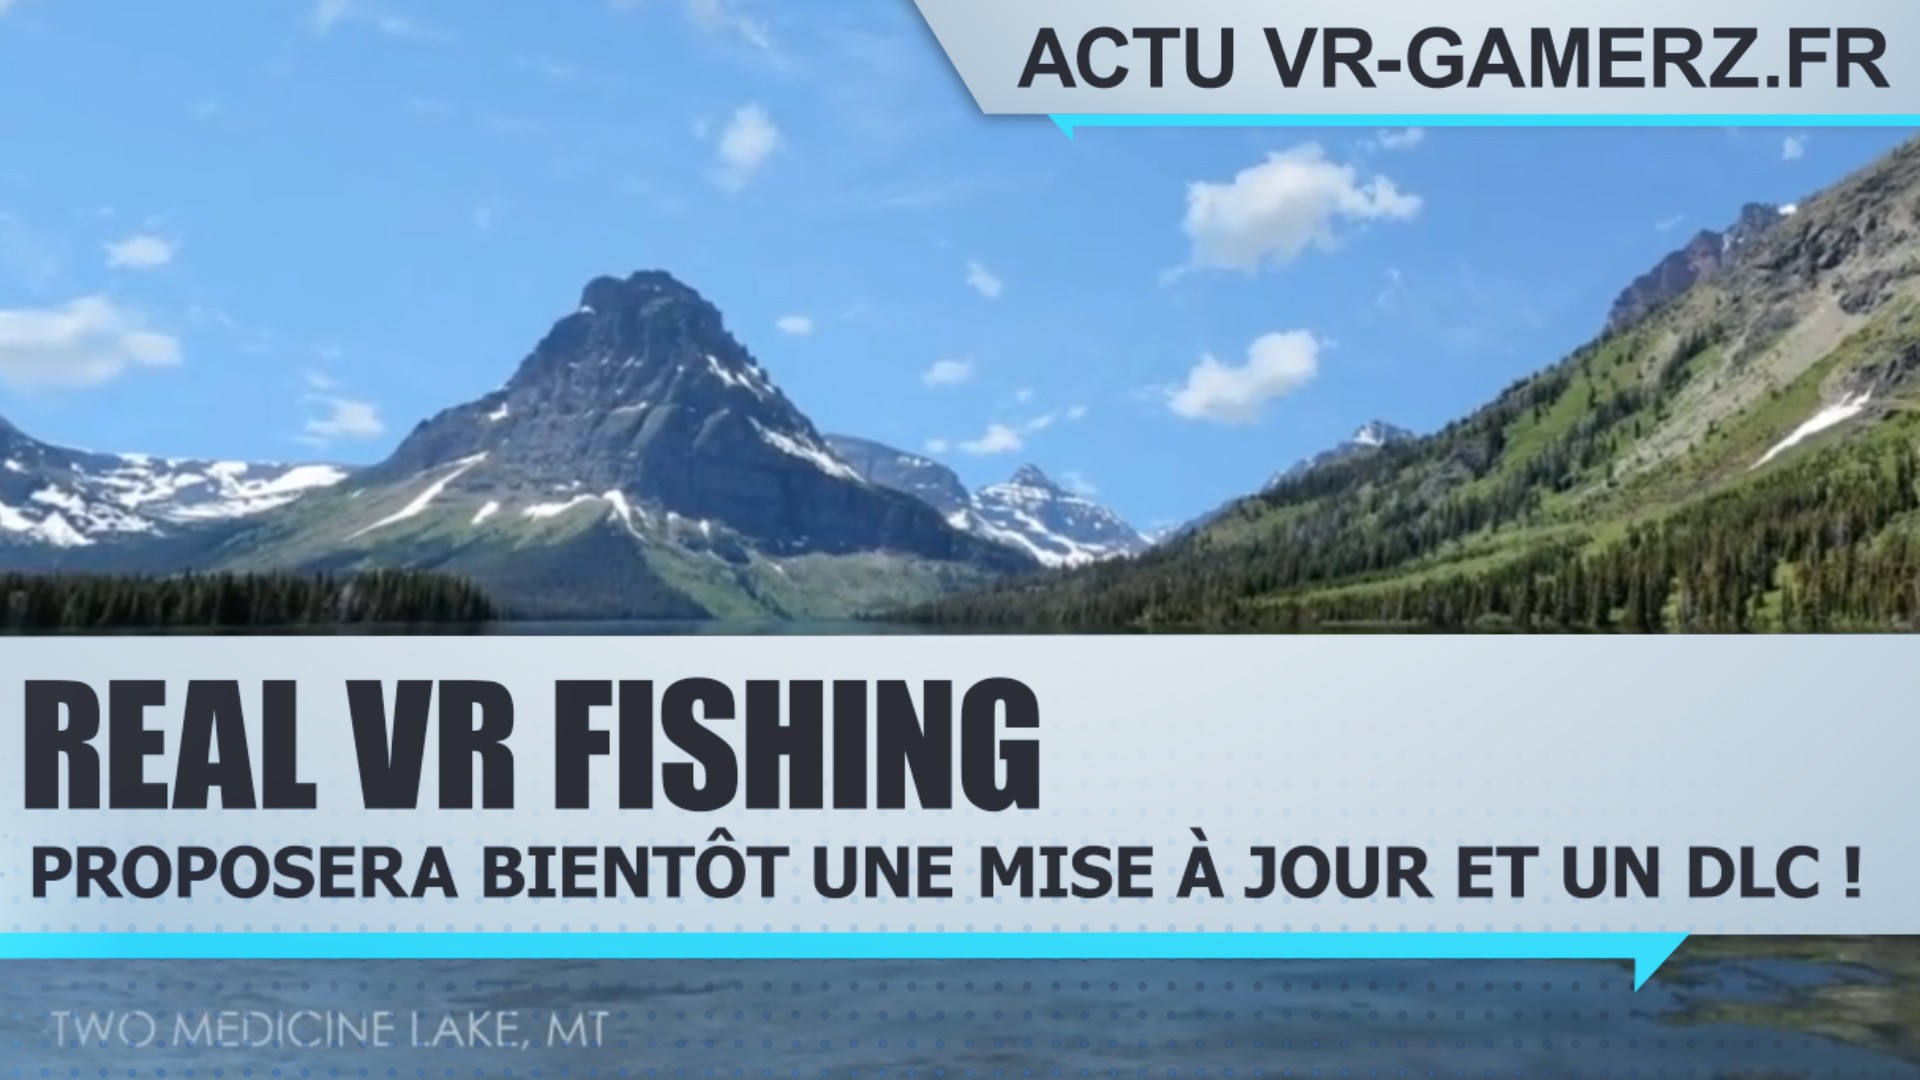 Real VR fishing recevra bientôt une mise à jour et un DLC sur Oculus quest !